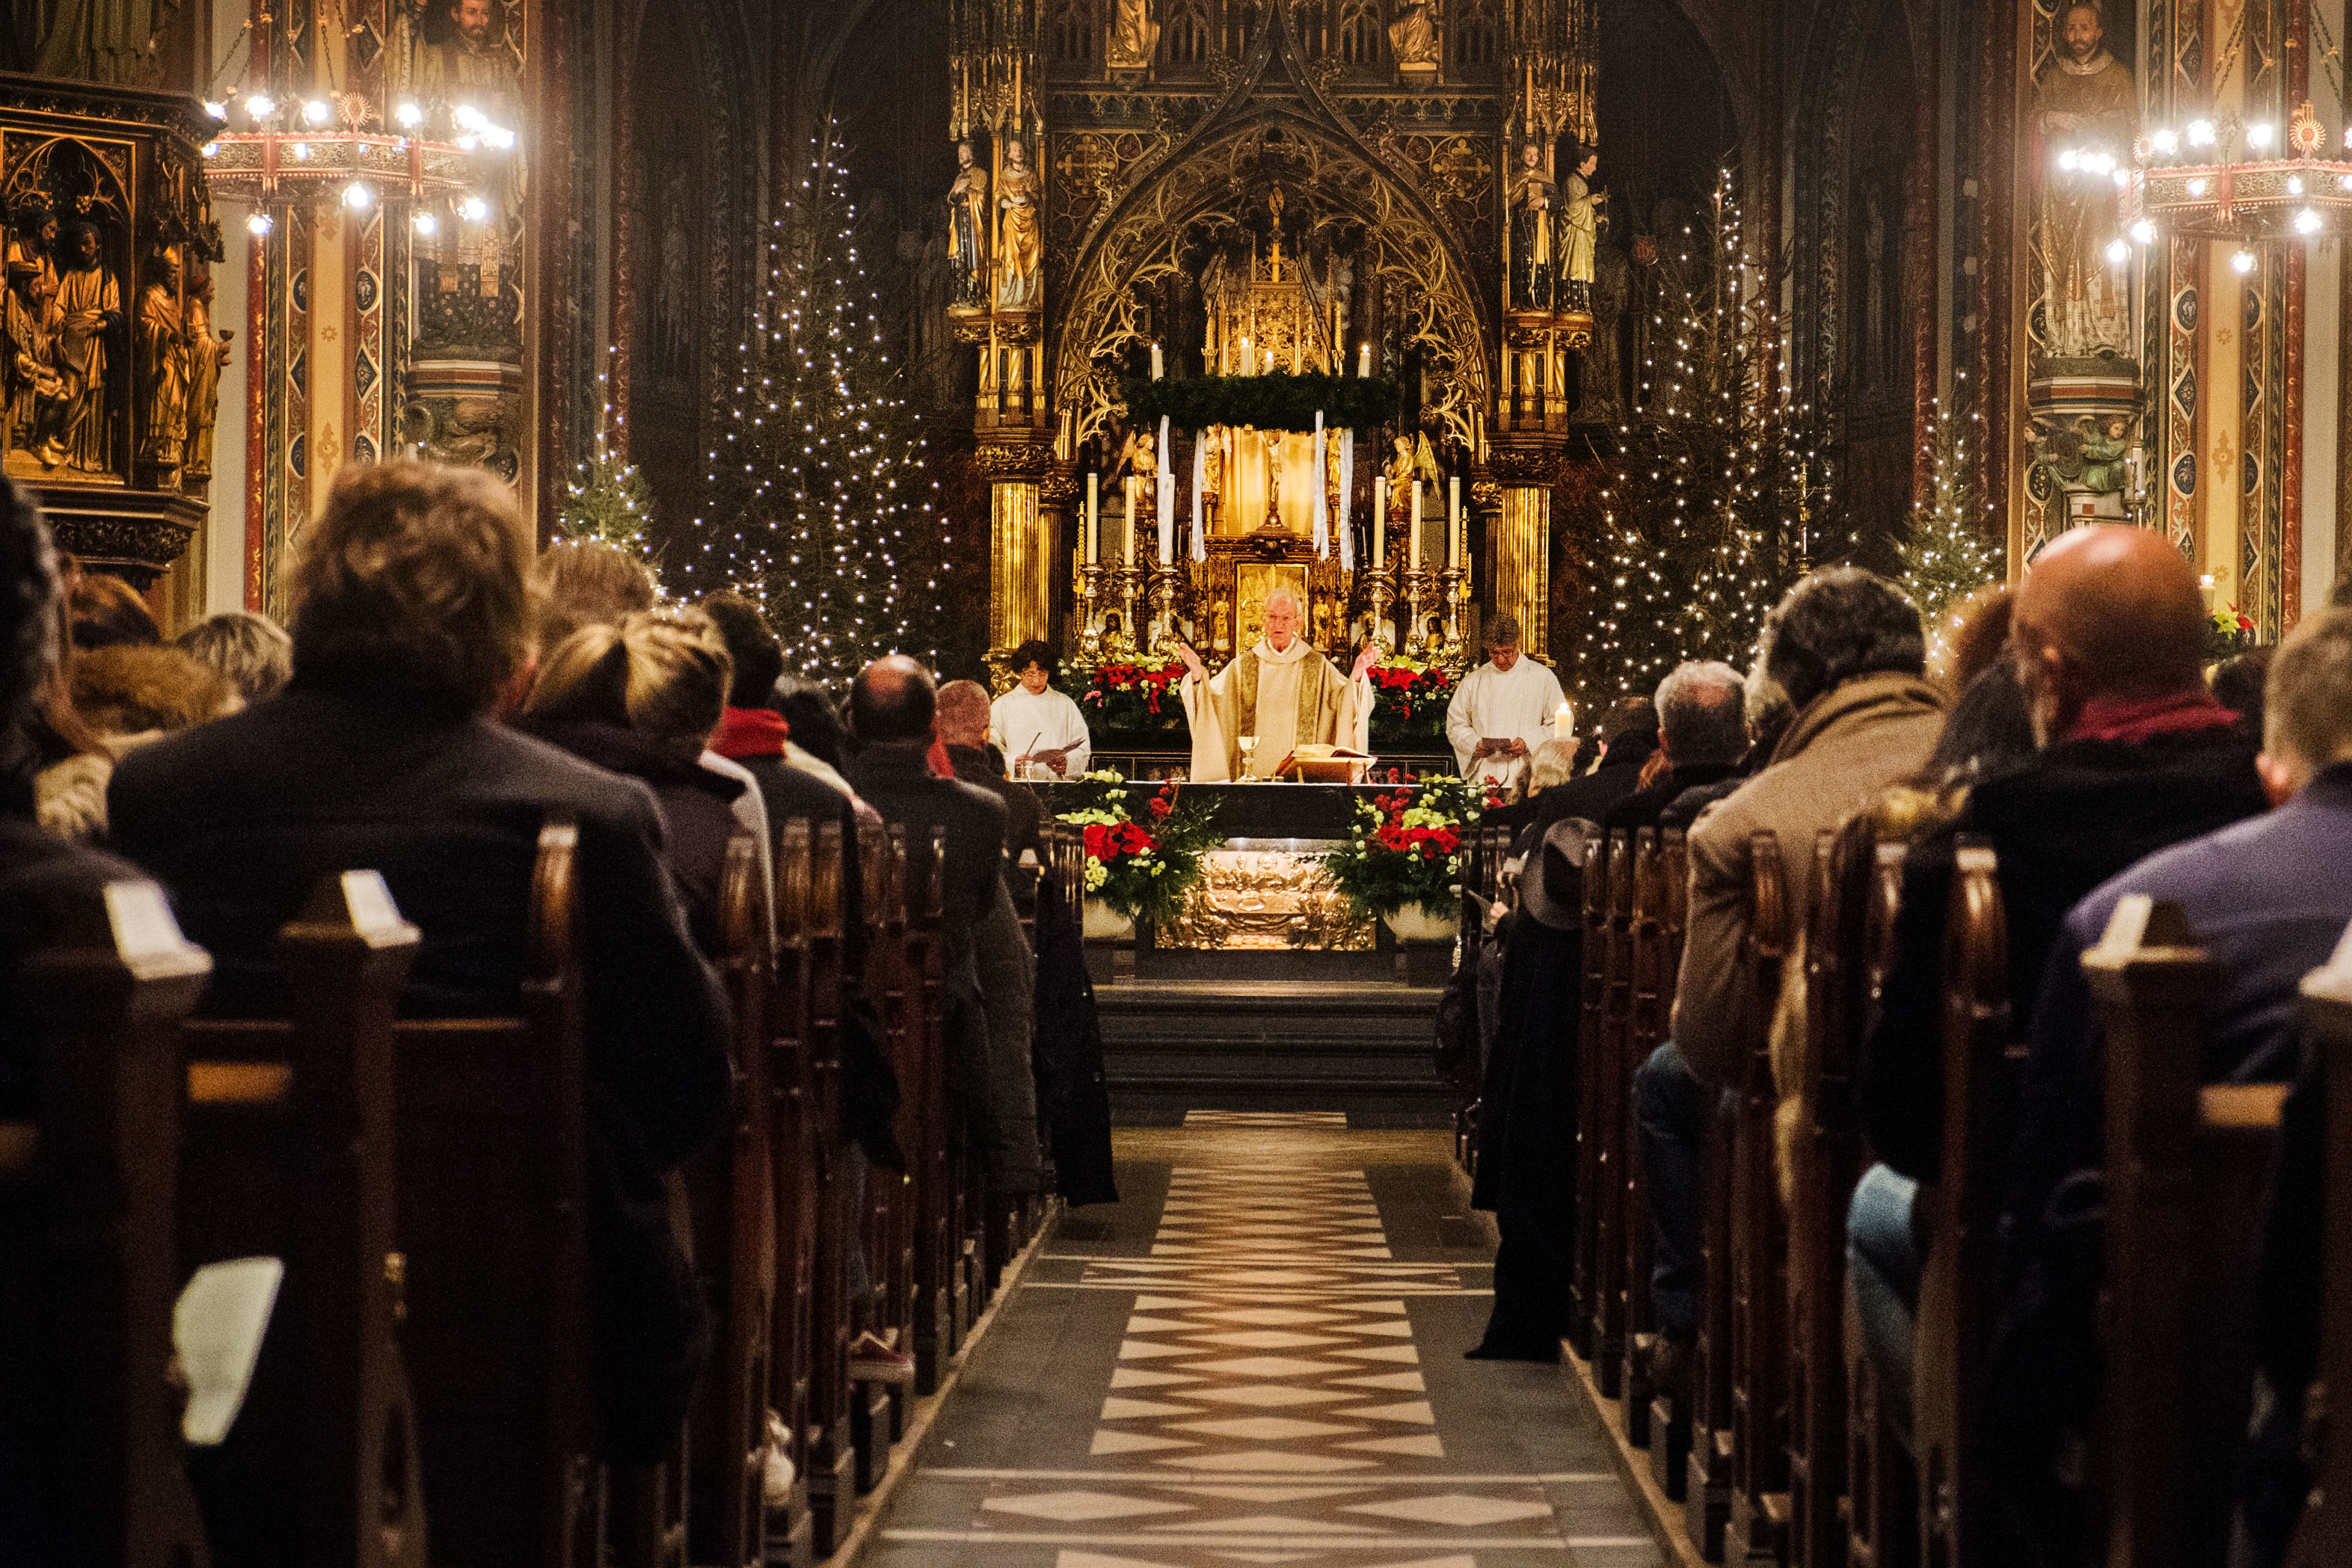 Kerken lopen kerst mis: 'Met pijn in het hart besloten de deuren op slot te doen...'